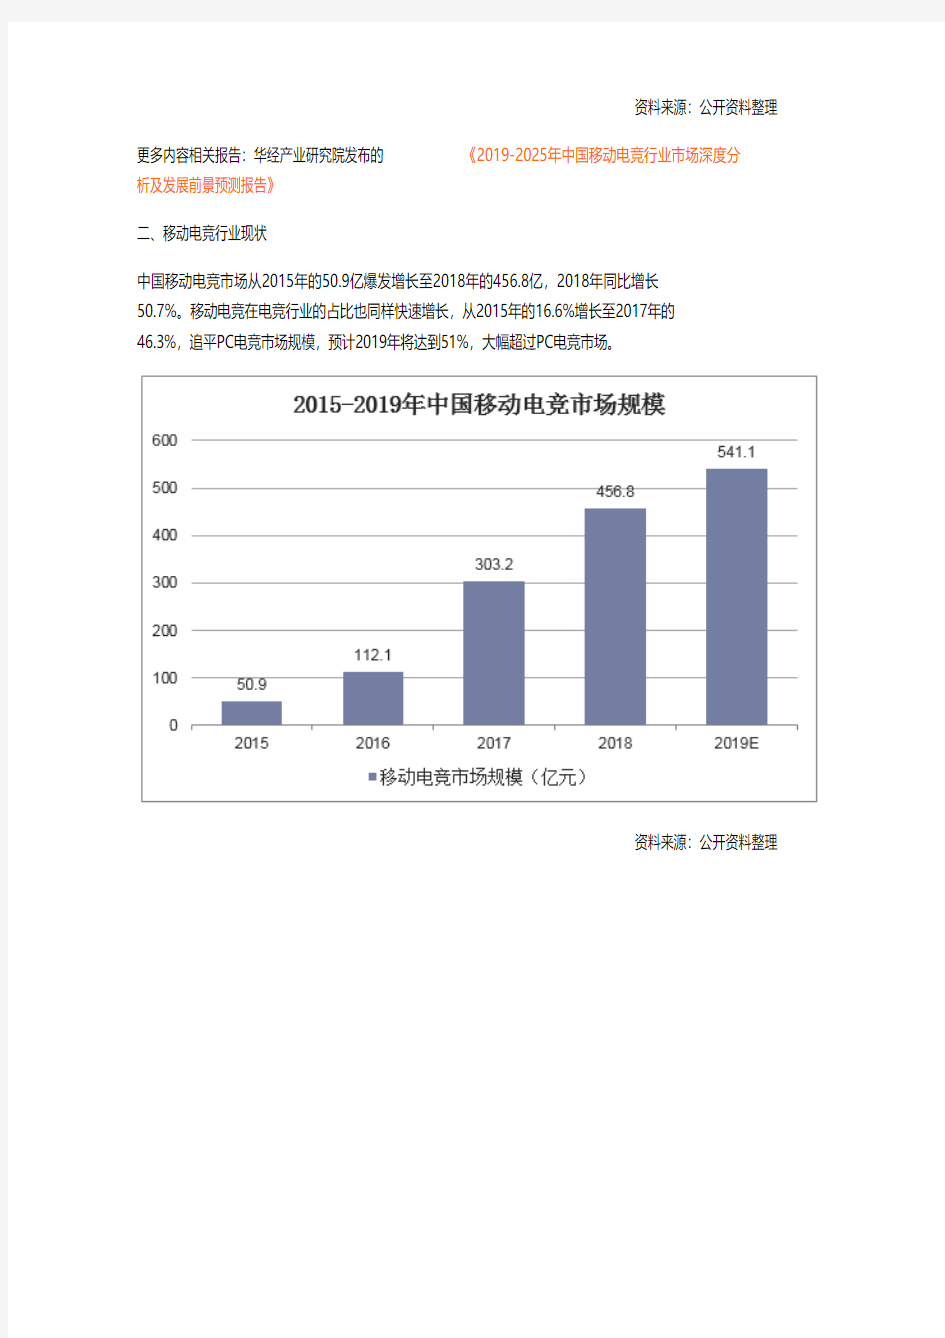 2018年中国移动电竞行业现状及发展趋势,市场规模超过PC电竞「图」